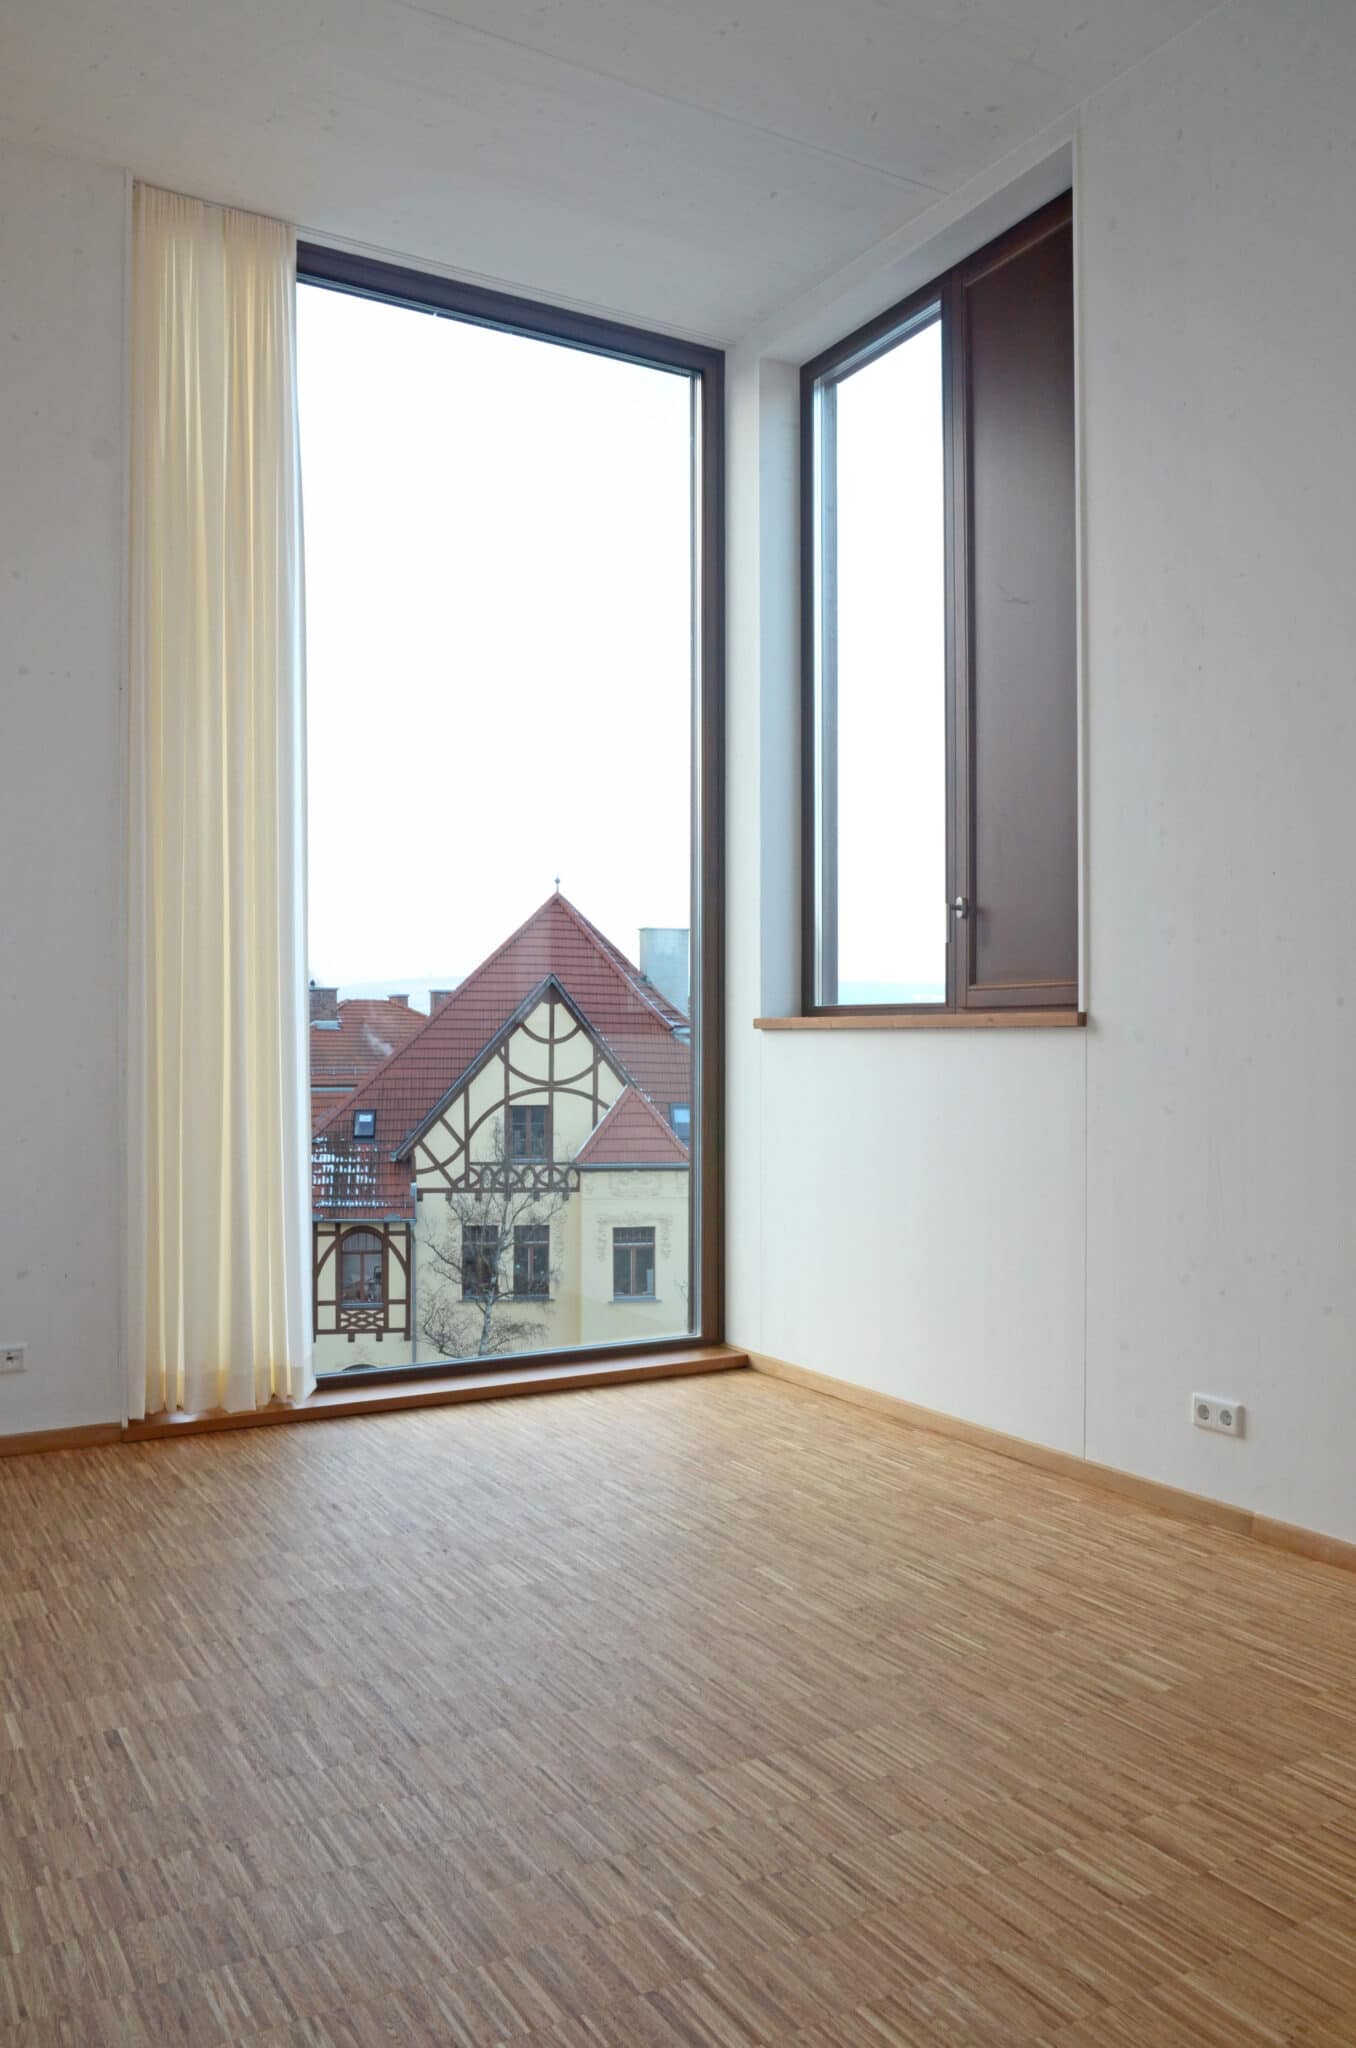 „Zimmer
im
Freien“,
große
Balkone
als
erweitertes
Wohnzimmer
in
der
städtischen
Bebauung.
(Bild:
Jörg
Bleicher)